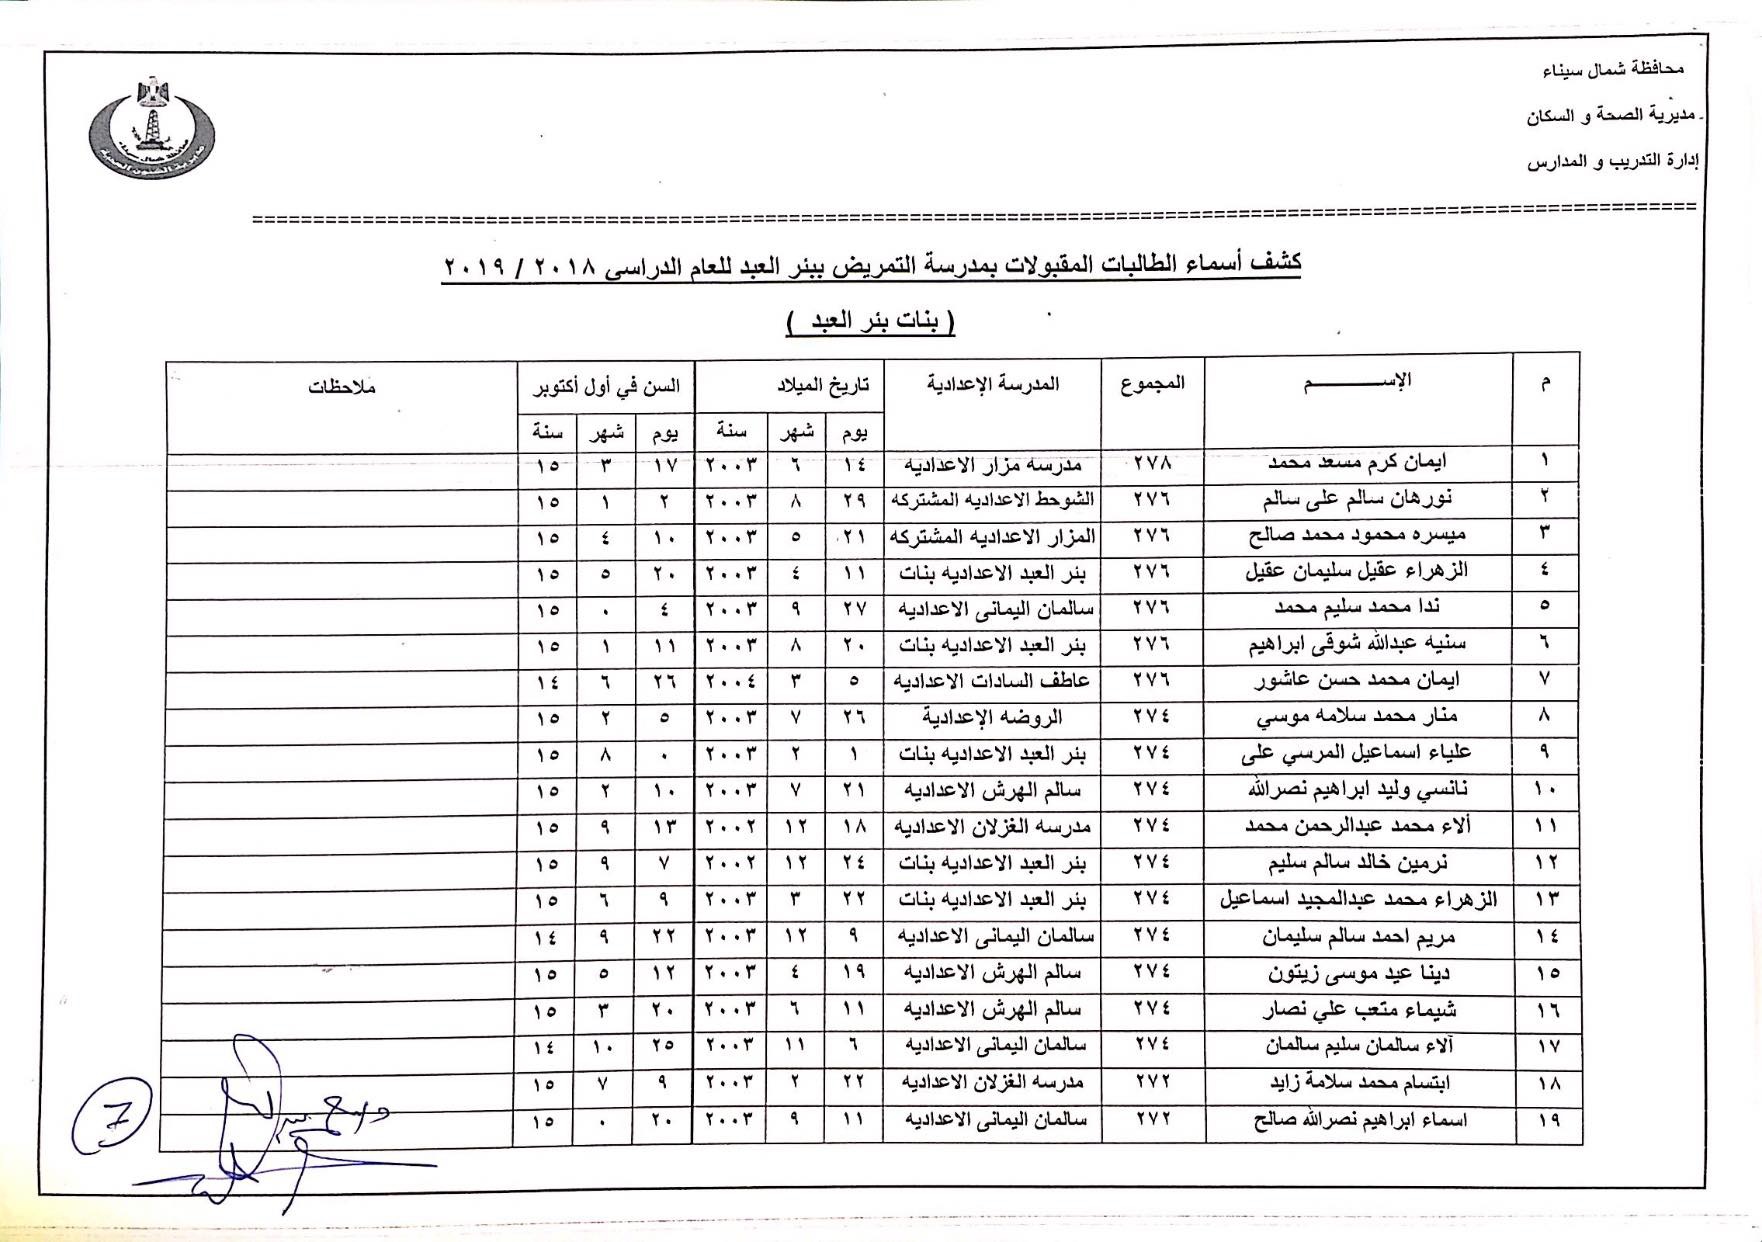 أسماء المقبولين بمدارس التمريض بشمال سيناء (7)